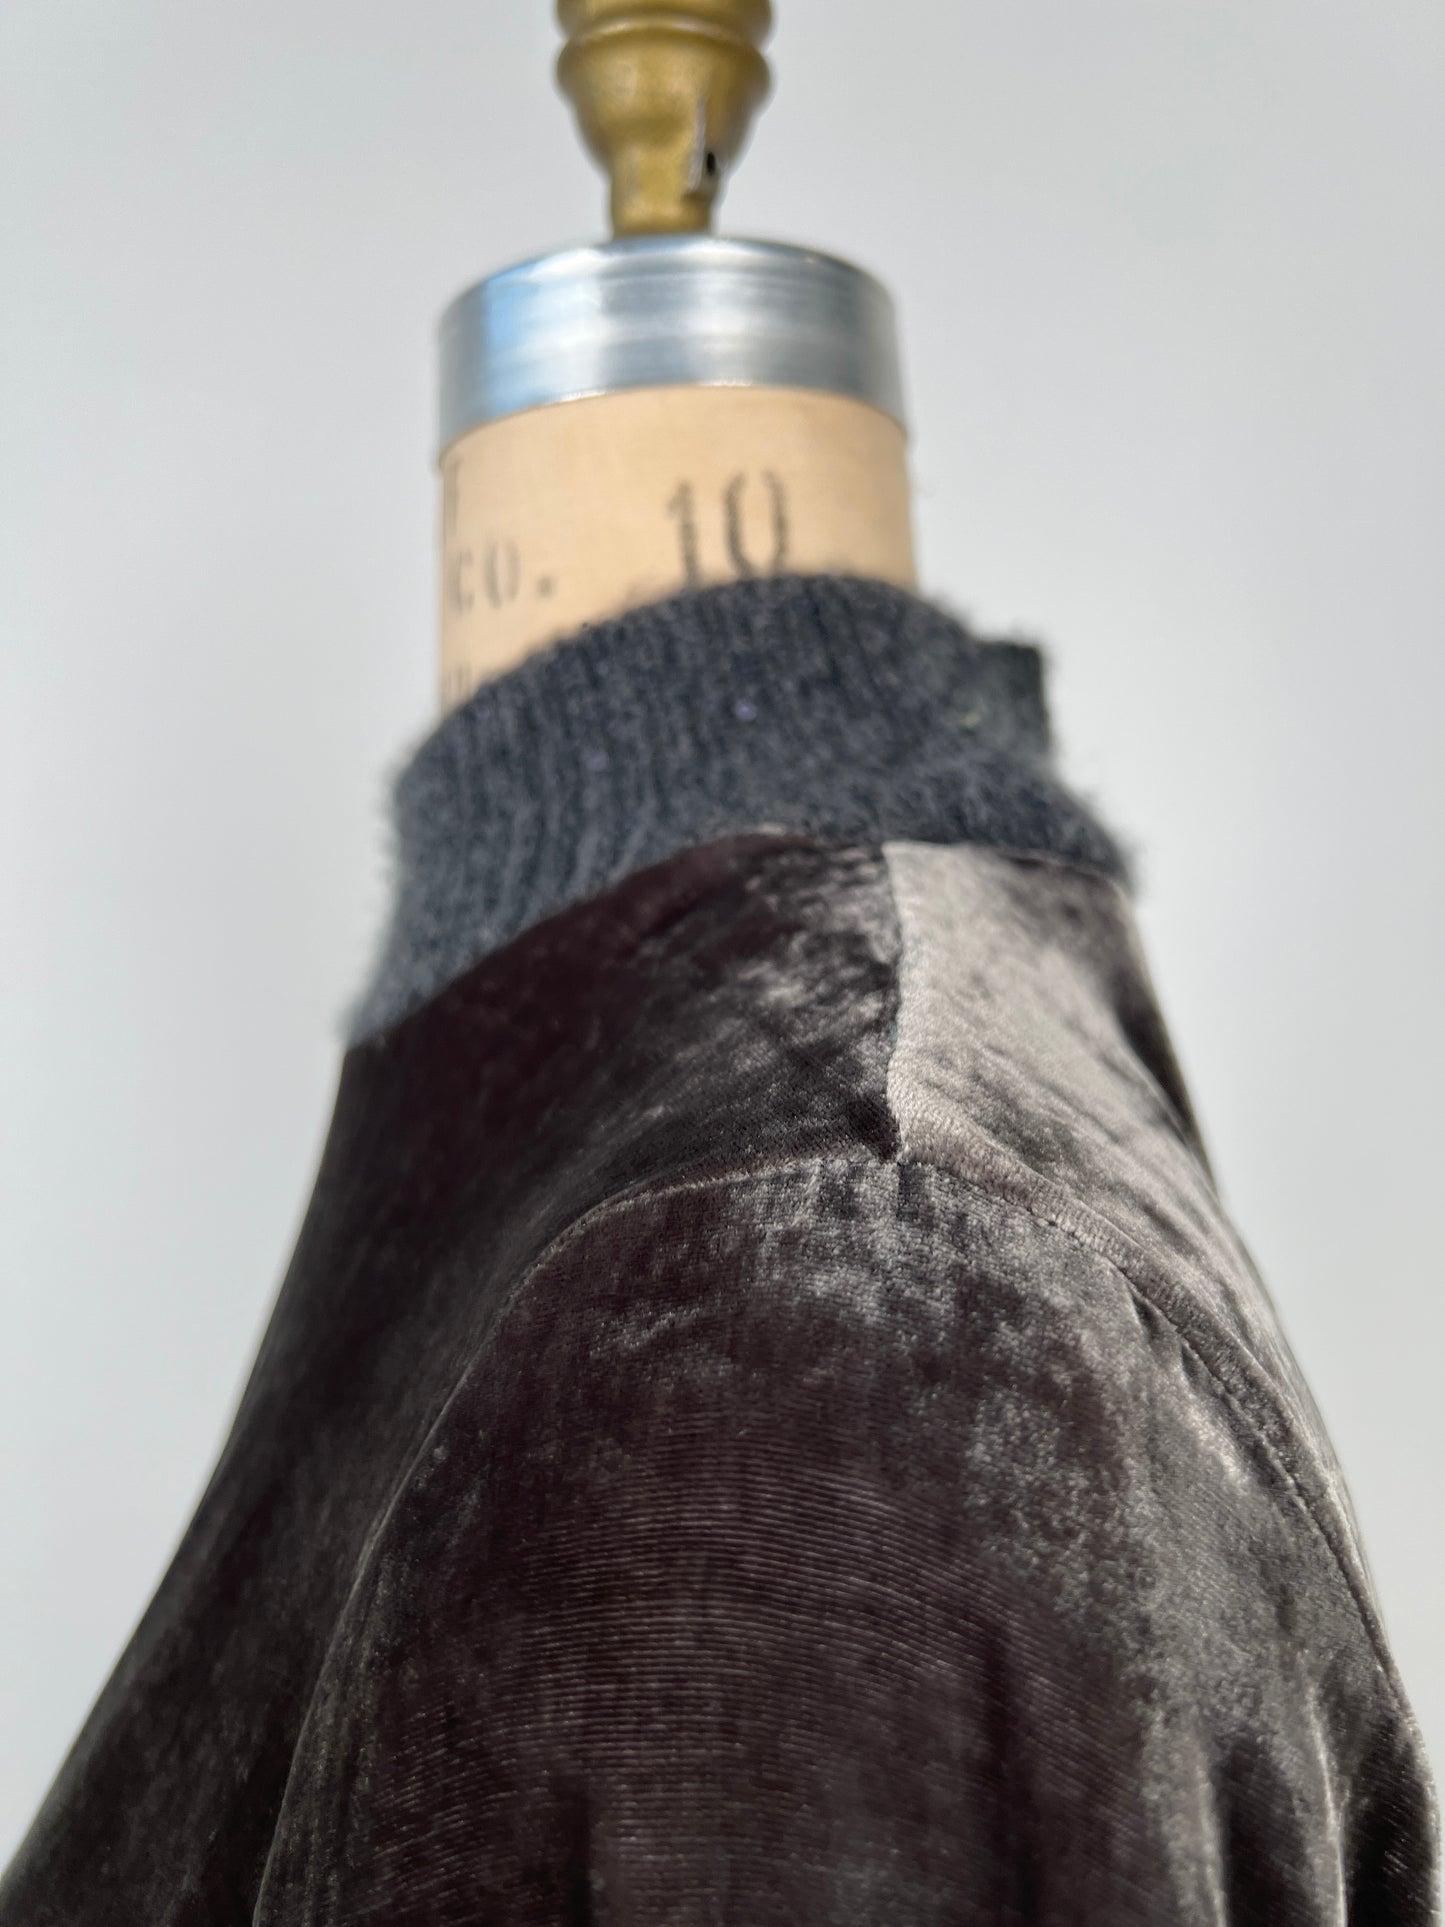 Robe en panne de velours anthracite à col tricot (XXS)